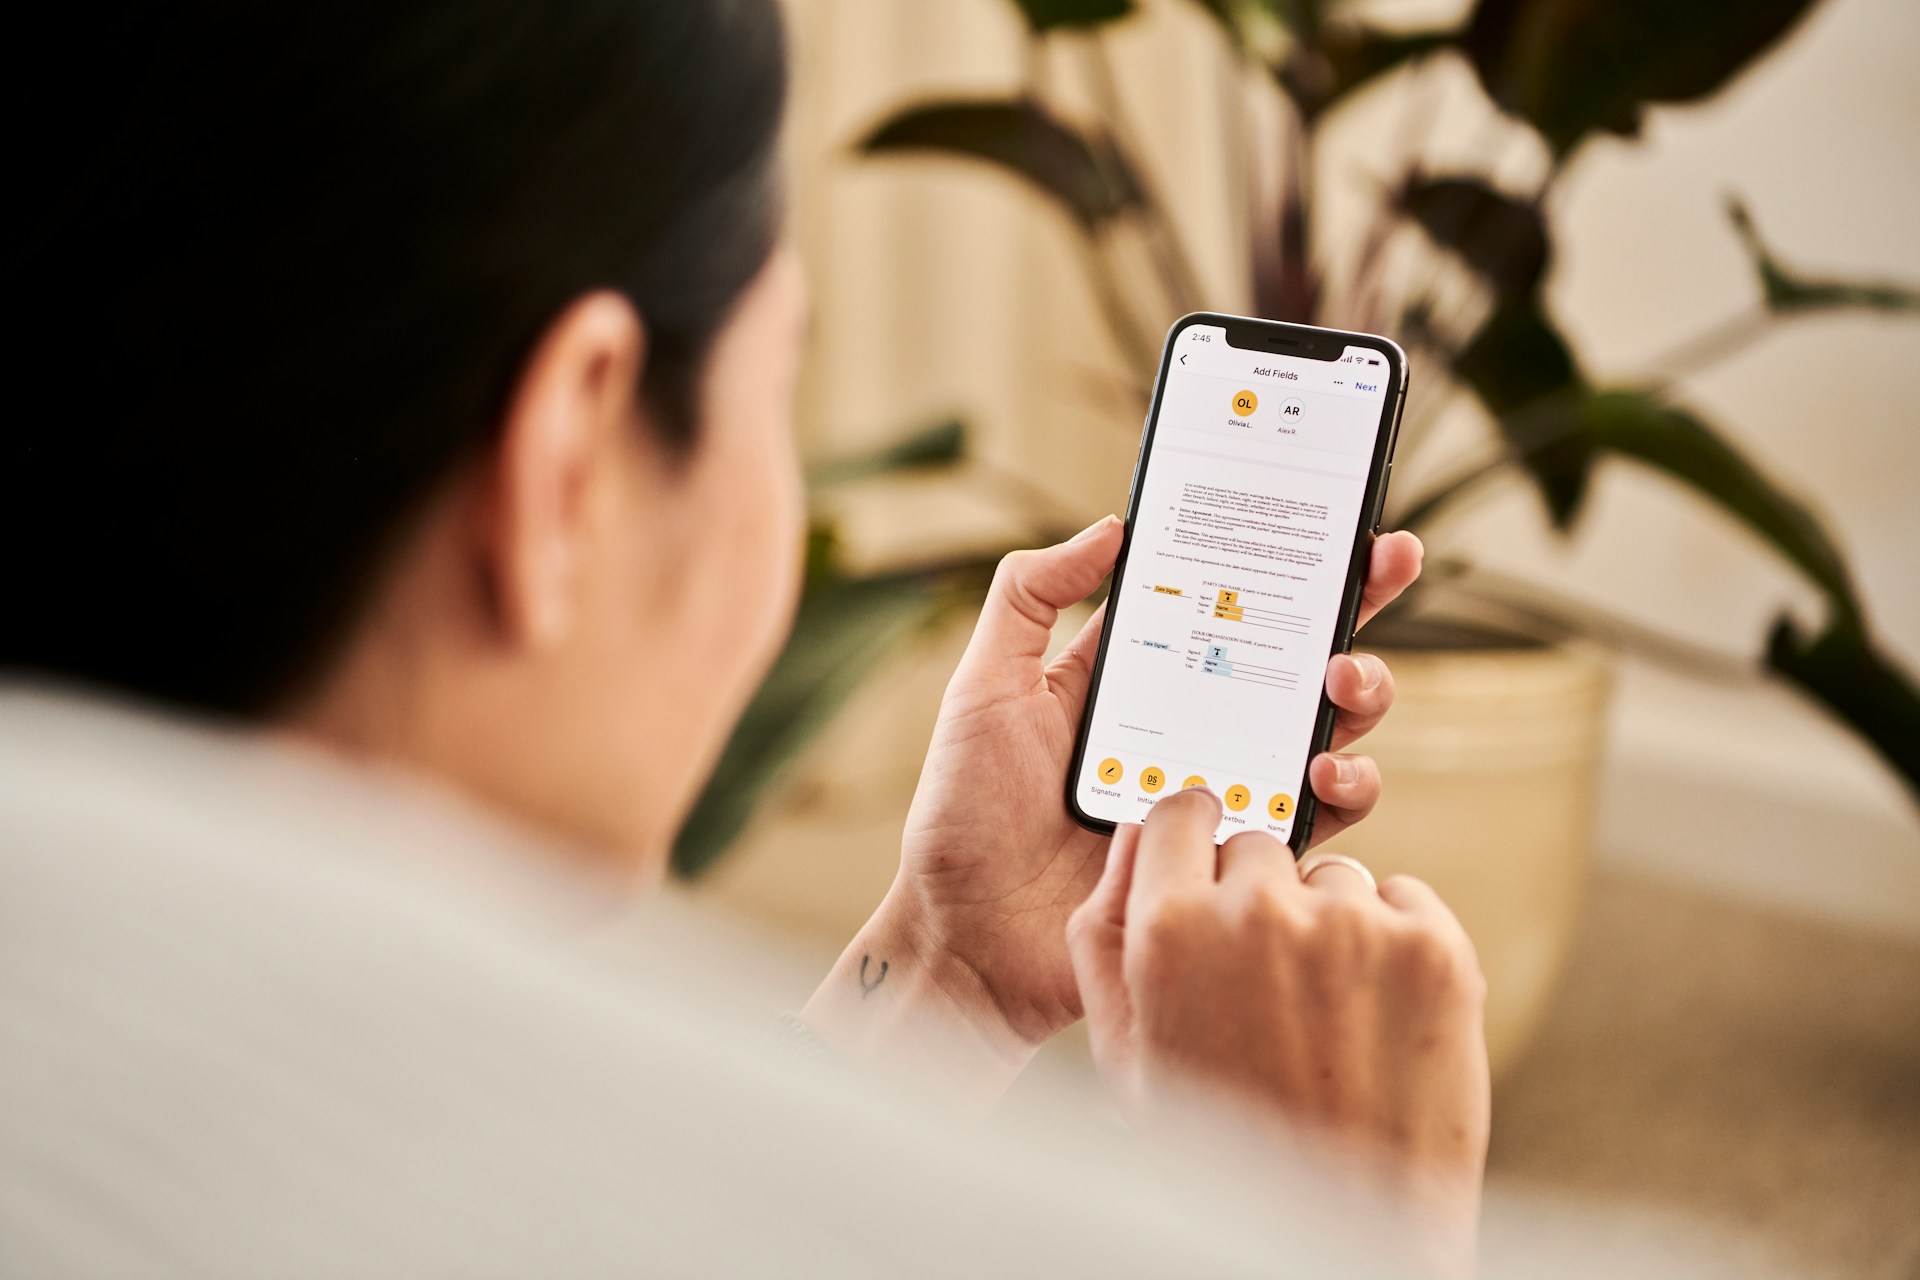 Descubra como configurar o NFC no seu Android ou iPhone e simplifique pagamentos e conexões diárias.